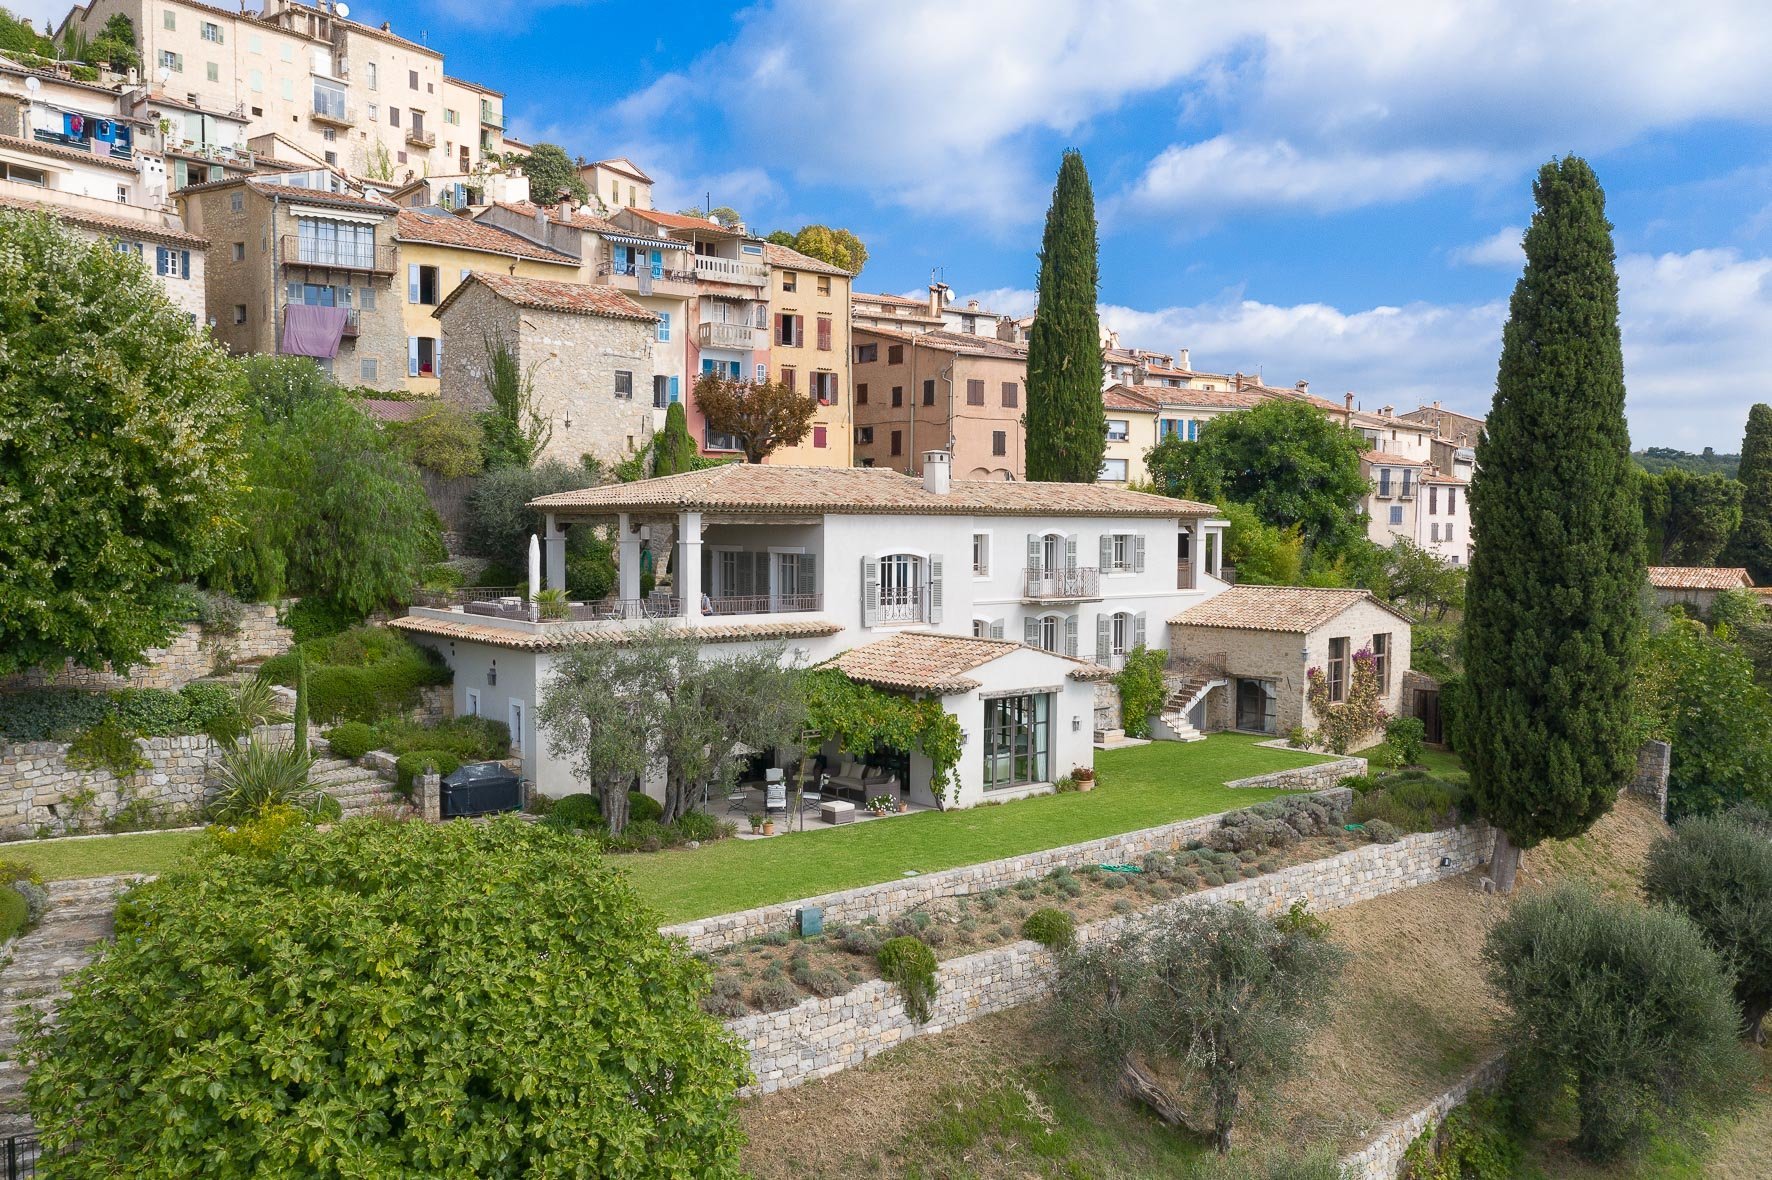 Portal Inmobiliario de Lujo en Chateauneuf De Grasse, presenta villa de lujo venta en Riviera Francesa, villa exclusiva para comprar y viviendas lujosas en venta en Francia.